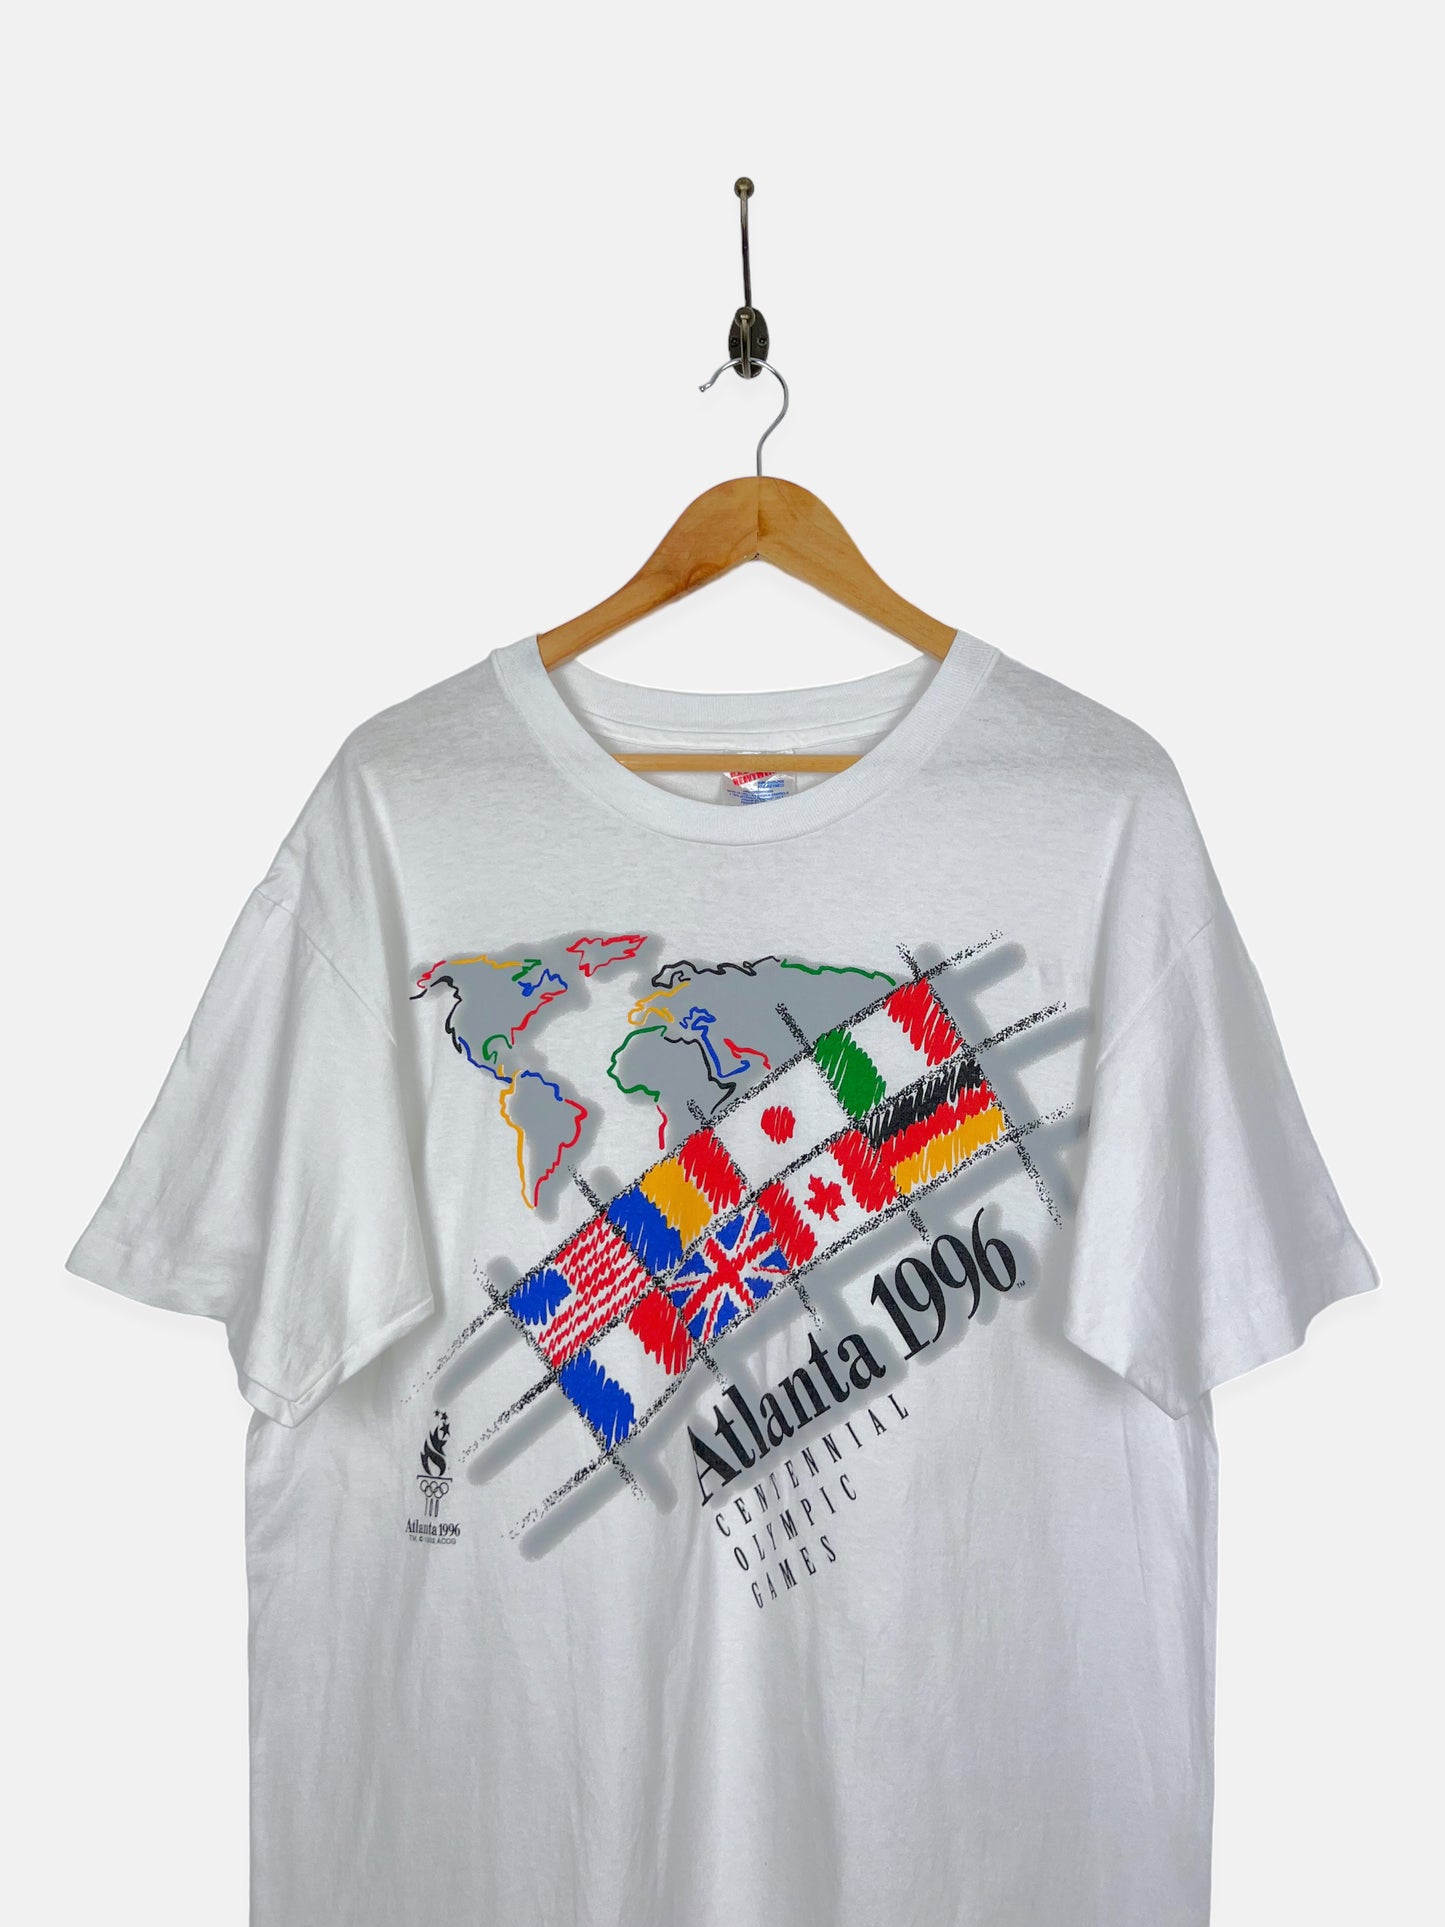 1996 Atlanta Olympics Vintage T-Shirt Size L